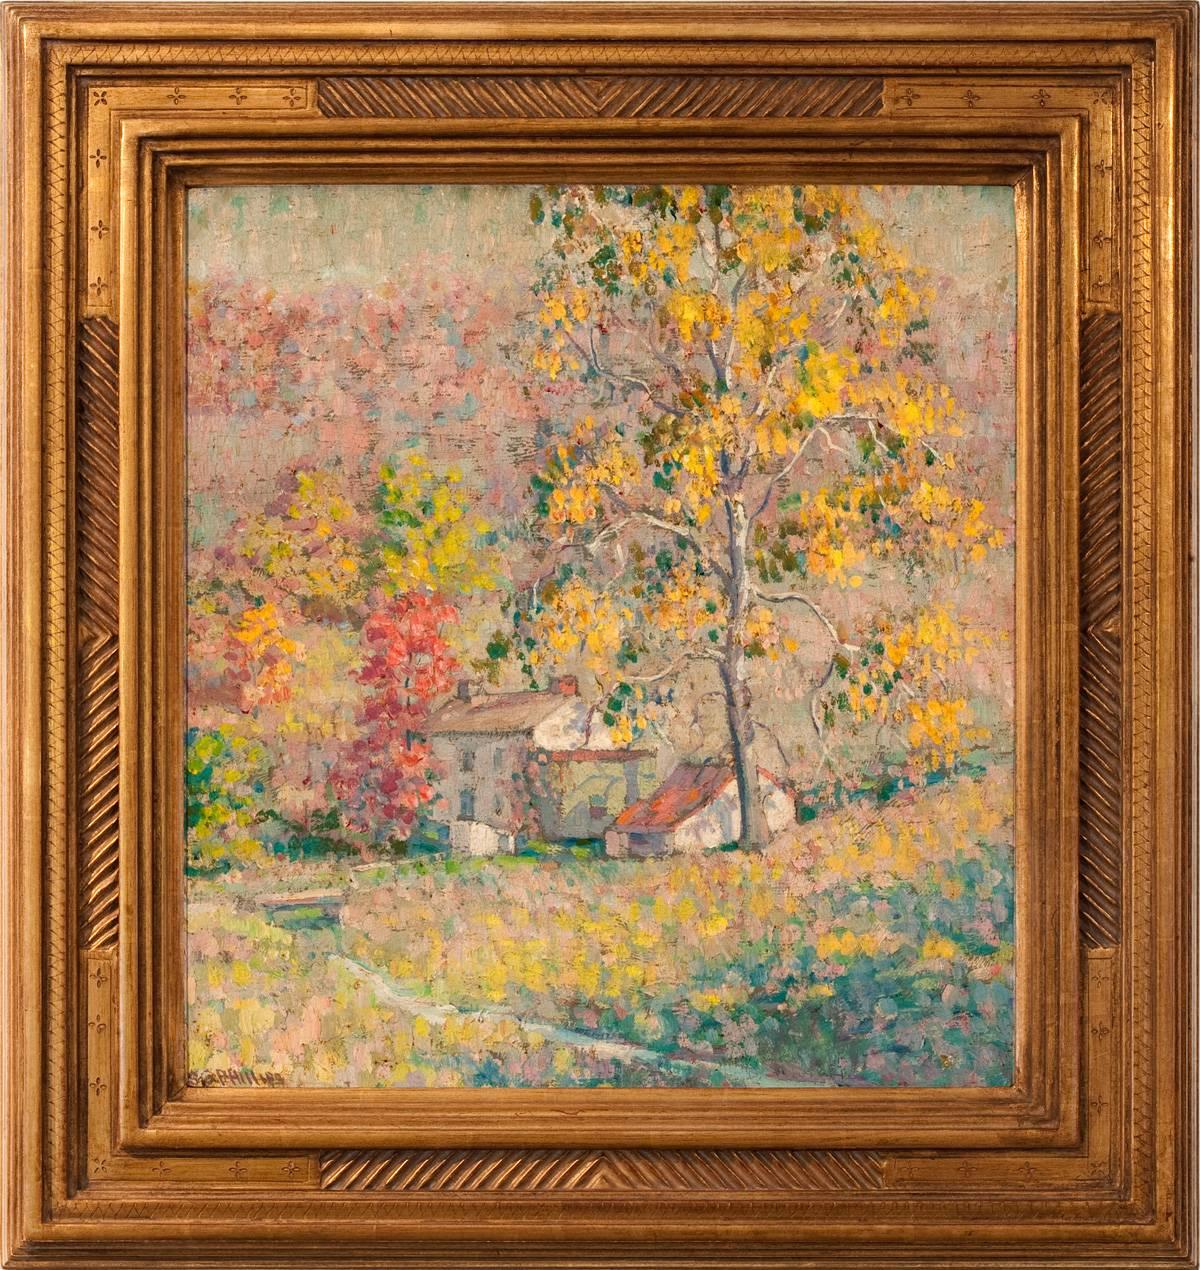 S. George Phillips Landscape Painting - "Autumn Colors"